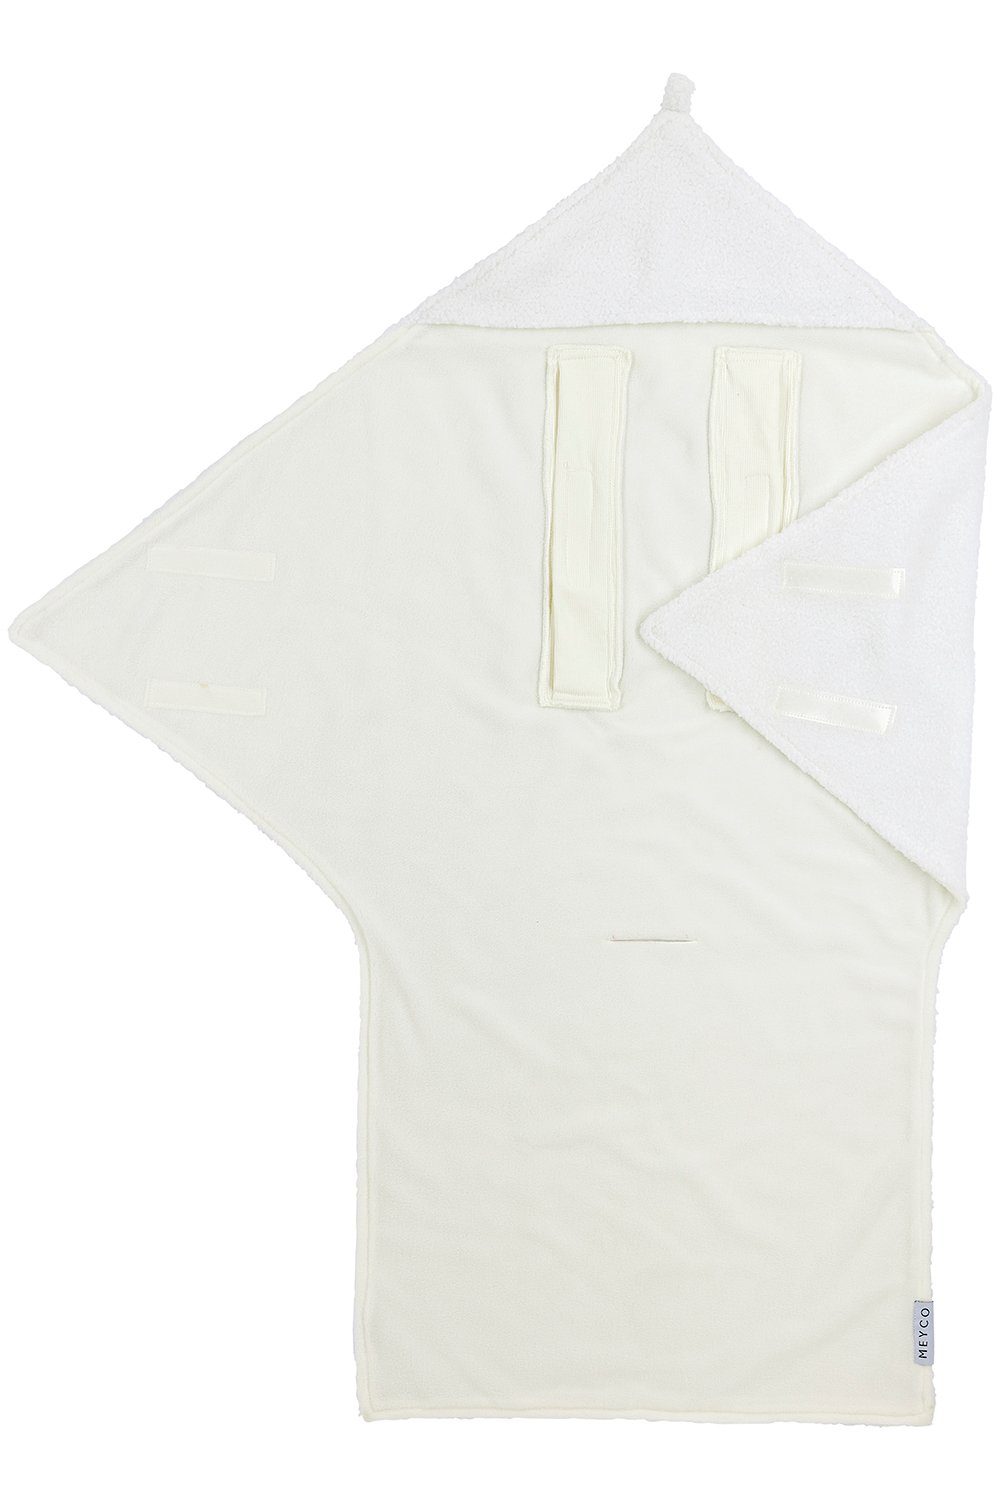 Off-White Wohndecken online kaufen » Off-White Decken | OTTO | Kunstfaserdecken